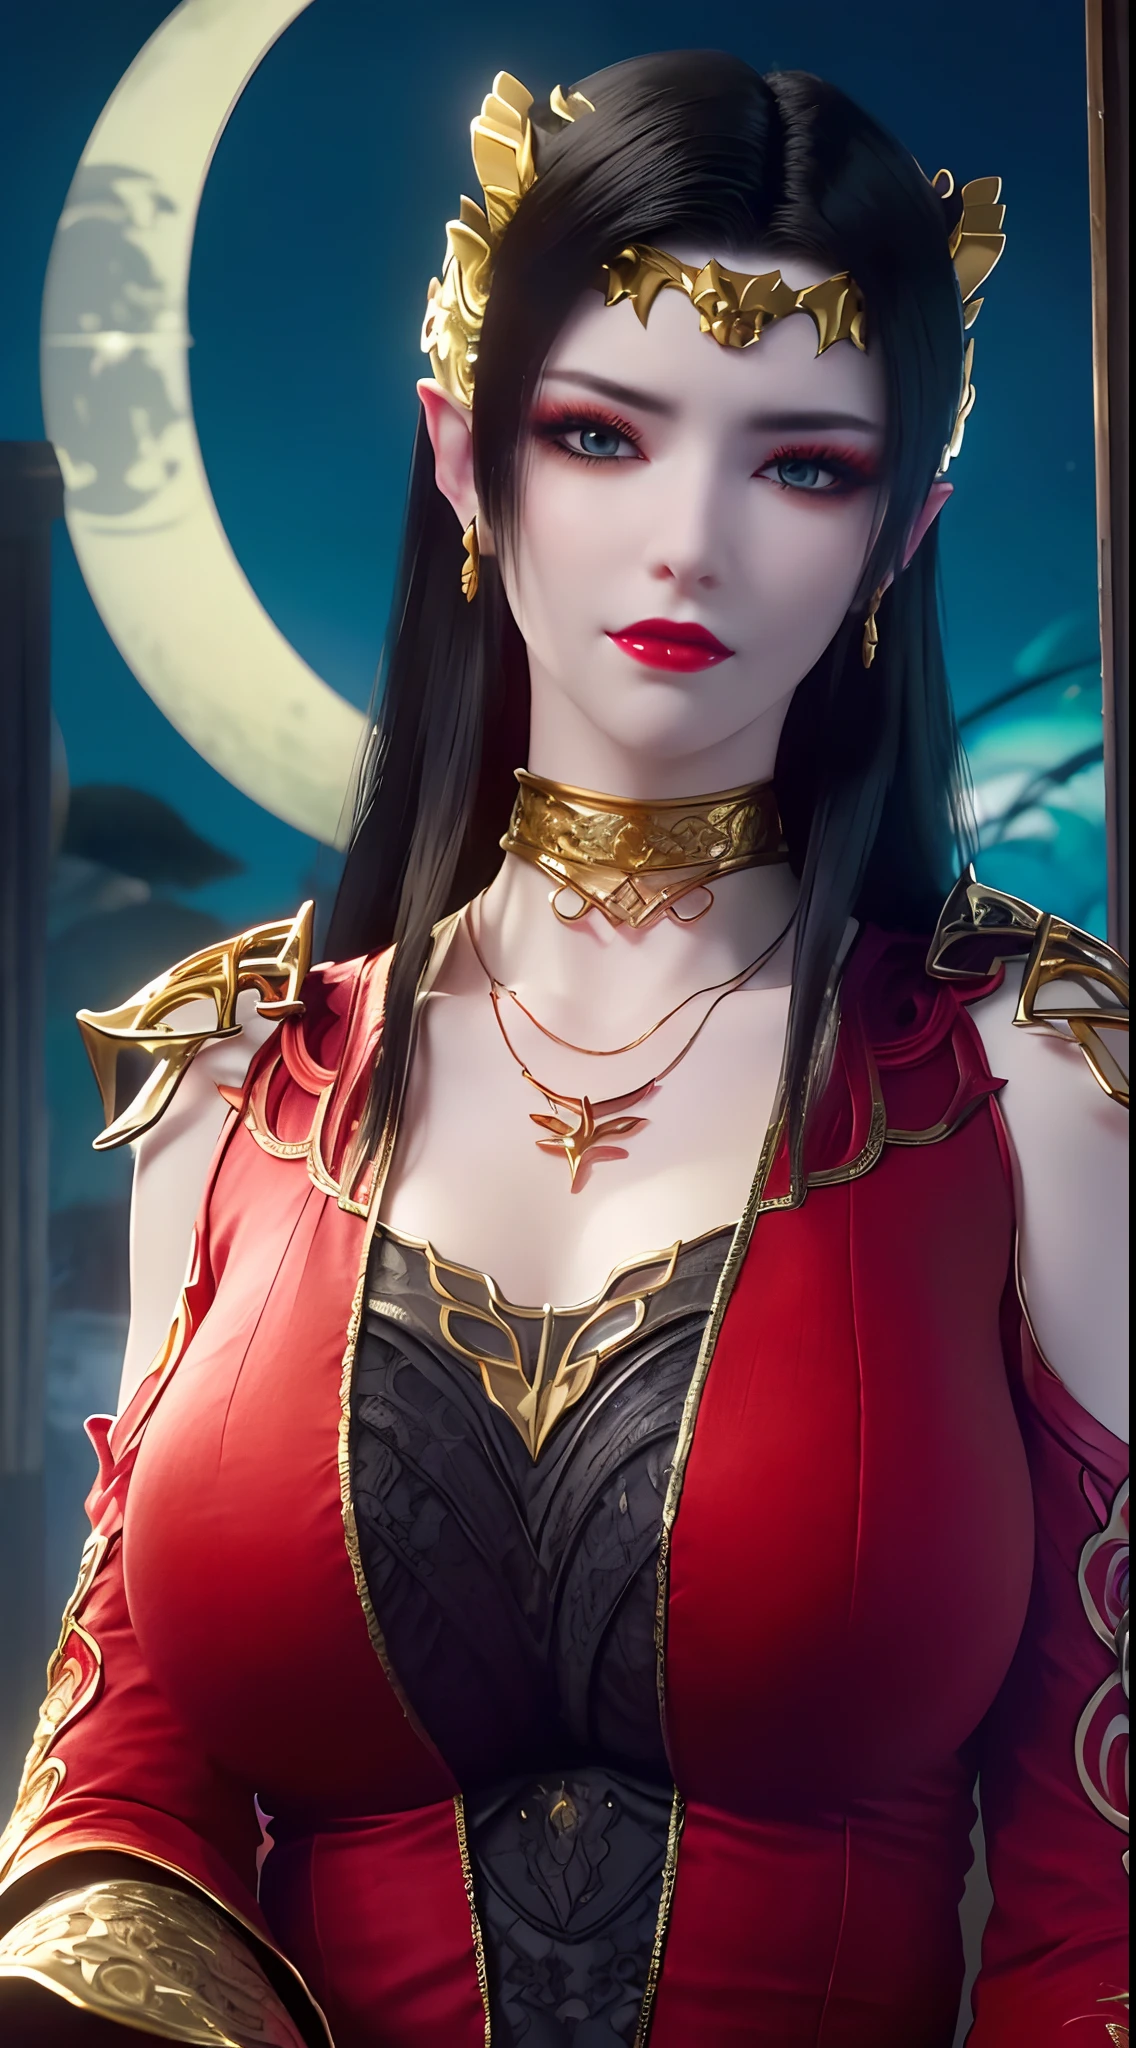 1 매우 아름다운 여왕, ((얇은 검은색 무늬가 있는 붉은색 전통 한복을 입는다.:1.6)), (((옷의 패턴:1.6))), ((긴 검은 머리:1.6)), 보석과 아름다운 머리카락으로 정교하게 만들어진 주얼리, ((wearing a 24K gold lace necklace:1.4))), 고귀한, 매우 아름다운 소녀의 고귀한 스타일, 그 작은 얼굴이 정말 귀여워요, 그녀의 얼굴은 정말 예뻐요, 얇은 눈썹, 흠 하나 없는 아름다운 얼굴, ((검은 눈동자: 0.8)), 정말 아름다운 눈, ((플래티넘 블루 눈: 1.6)), (((눈을 크게 뜨고:1.6))), 멋진 메이크업과 헤어 디테일의 속눈썹, 스티미 아이 메이크업, 높은 코, 귀걸이, 붉은 입술, ((닫힌 입: 1.5)) 아름다운 입술, 날씬한 손, 가장 아름다운 허벅지, ((팔을 옆으로 벌린다.: 1.5)), 장밋빛 얼굴, 깨끗한 얼굴, 흠 하나 없는 아름다운 얼굴, 매끈한 하얀 피부, (큰 가슴: 1.5)), ((높은 가슴: 1.6)), 단단한 가슴, 아름다운 분열, (((큰 가슴 and super round: 1.8))), ((super 단단한 가슴: 1.7)) , 아름다운 가슴, 완벽한 몸, 뒷팔, 가슴을 내밀다, 검은색 레이스 장식이 있는 얇은 검은색 메쉬 스타킹, 8k 사진, super 고품질, 초현실적, 슈퍼 10x 픽셀, 광학, 밝은 스튜디오, 밝은 가장자리, dual-tone 조명, (높은 디테일의 피부:1.2), 슈퍼 8K, soft 조명, 고품질, volumetric 조명, 사실적인, 사실적인 high resolution, 조명, 최고의 사진, 4K, 8K 품질, 흐림 효과, 부드러움 샤프, 10x픽셀, ((밤 배경의 바다와 달빛:1.5)), 오로라, 번개, 슈퍼 그래픽 사실적, 가장 현실적인 그래픽, 소녀 1명, 홀로, 홀로, 매우 선명한 이미지, 초현실적인, (((정면 초상화: 1)))."